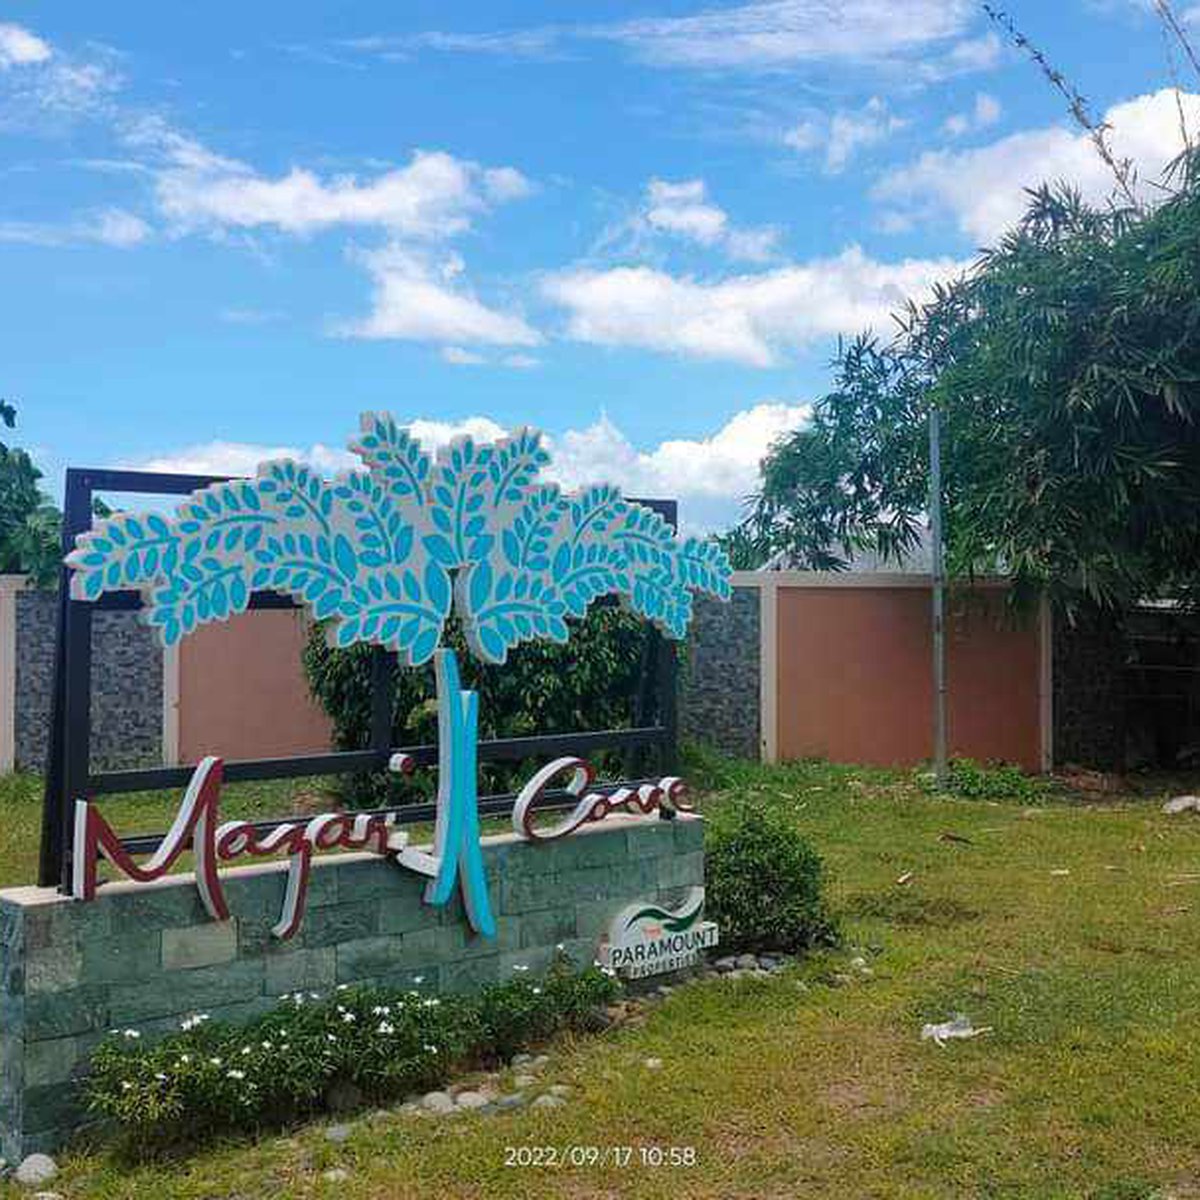 2-bedroom Townhouse For Sale in Naga Cebu